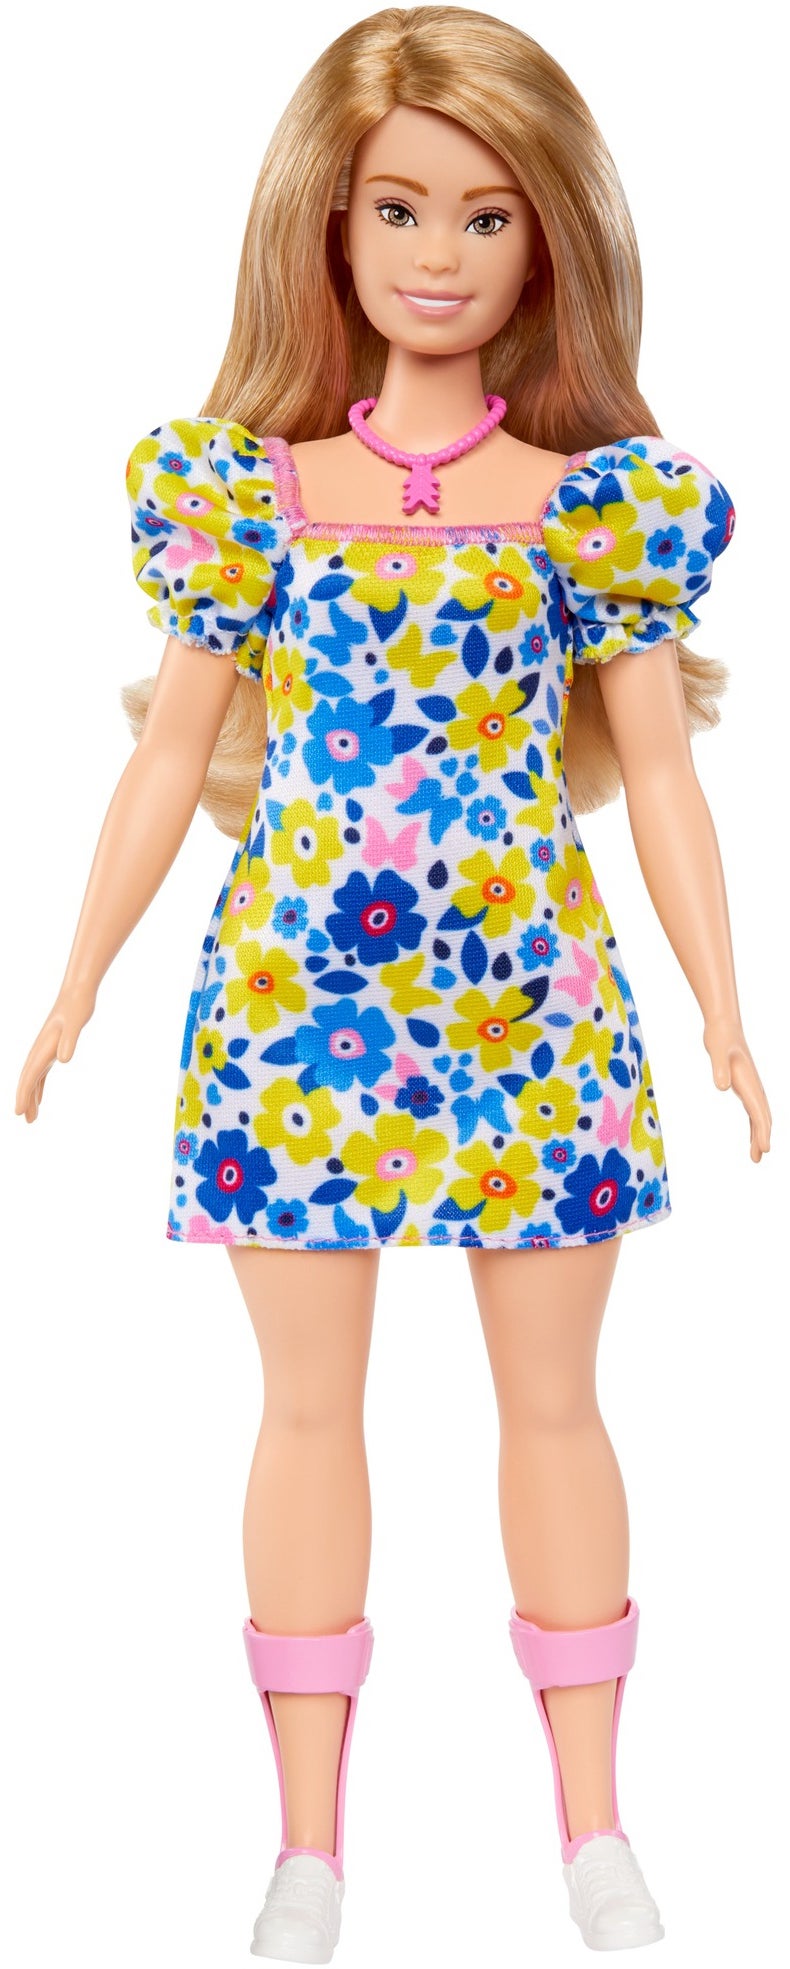 Barbie Fashionistas Puppe mit Downsyndrom von Barbie